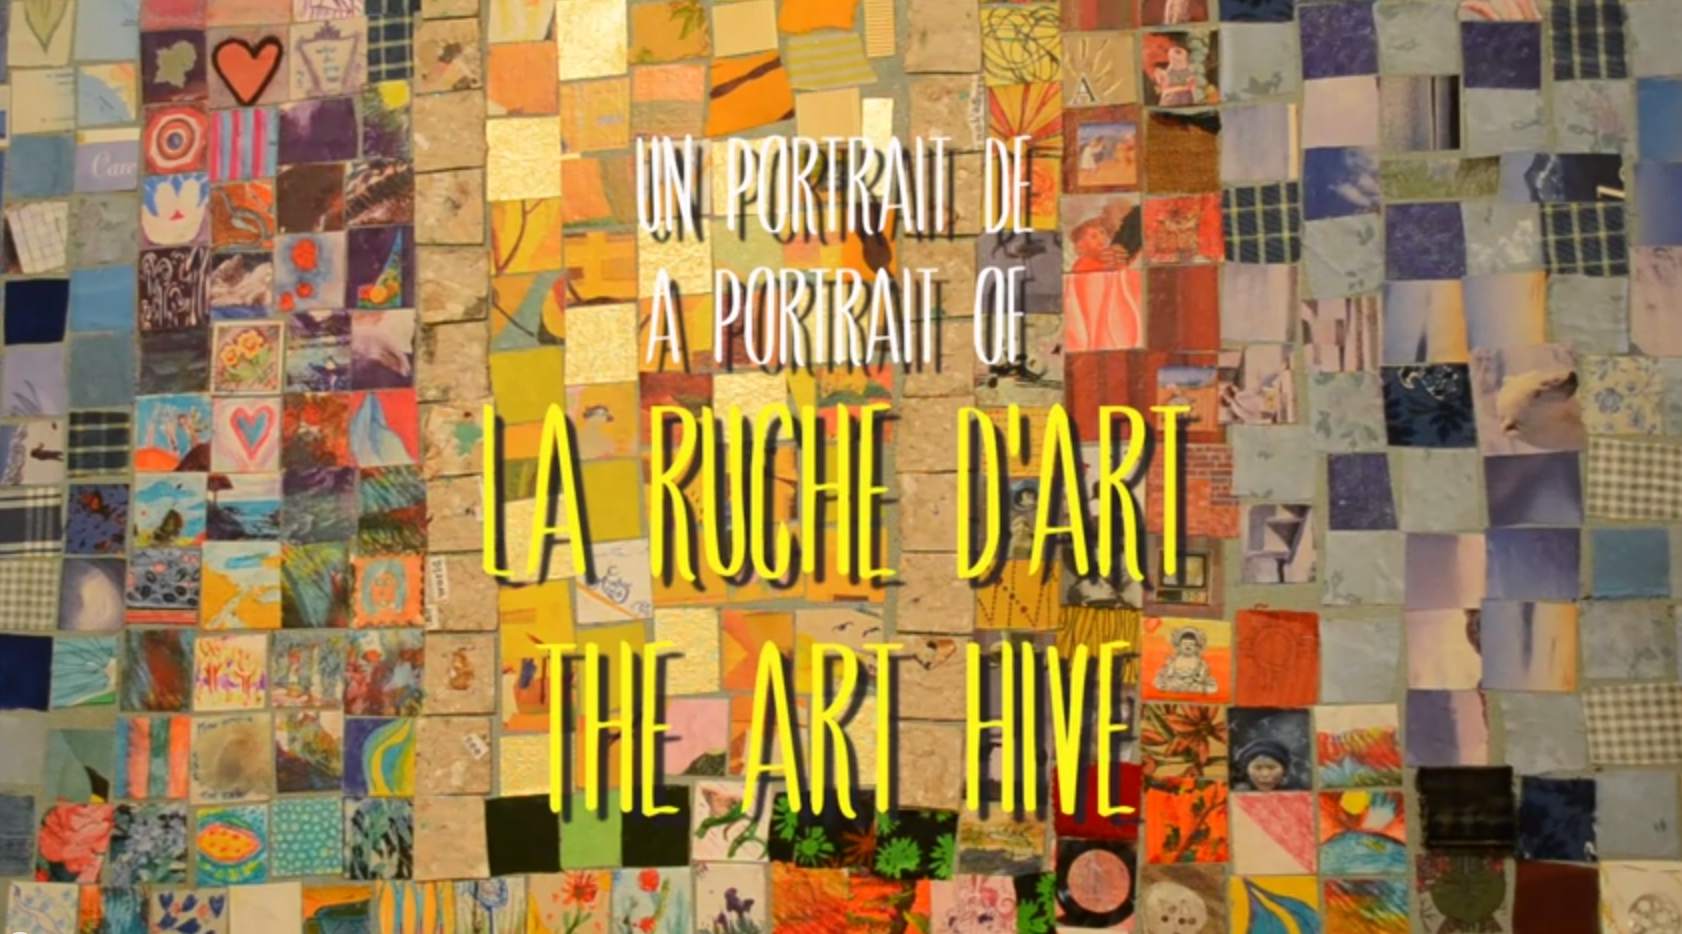 A Portrait of La Ruche d'Art